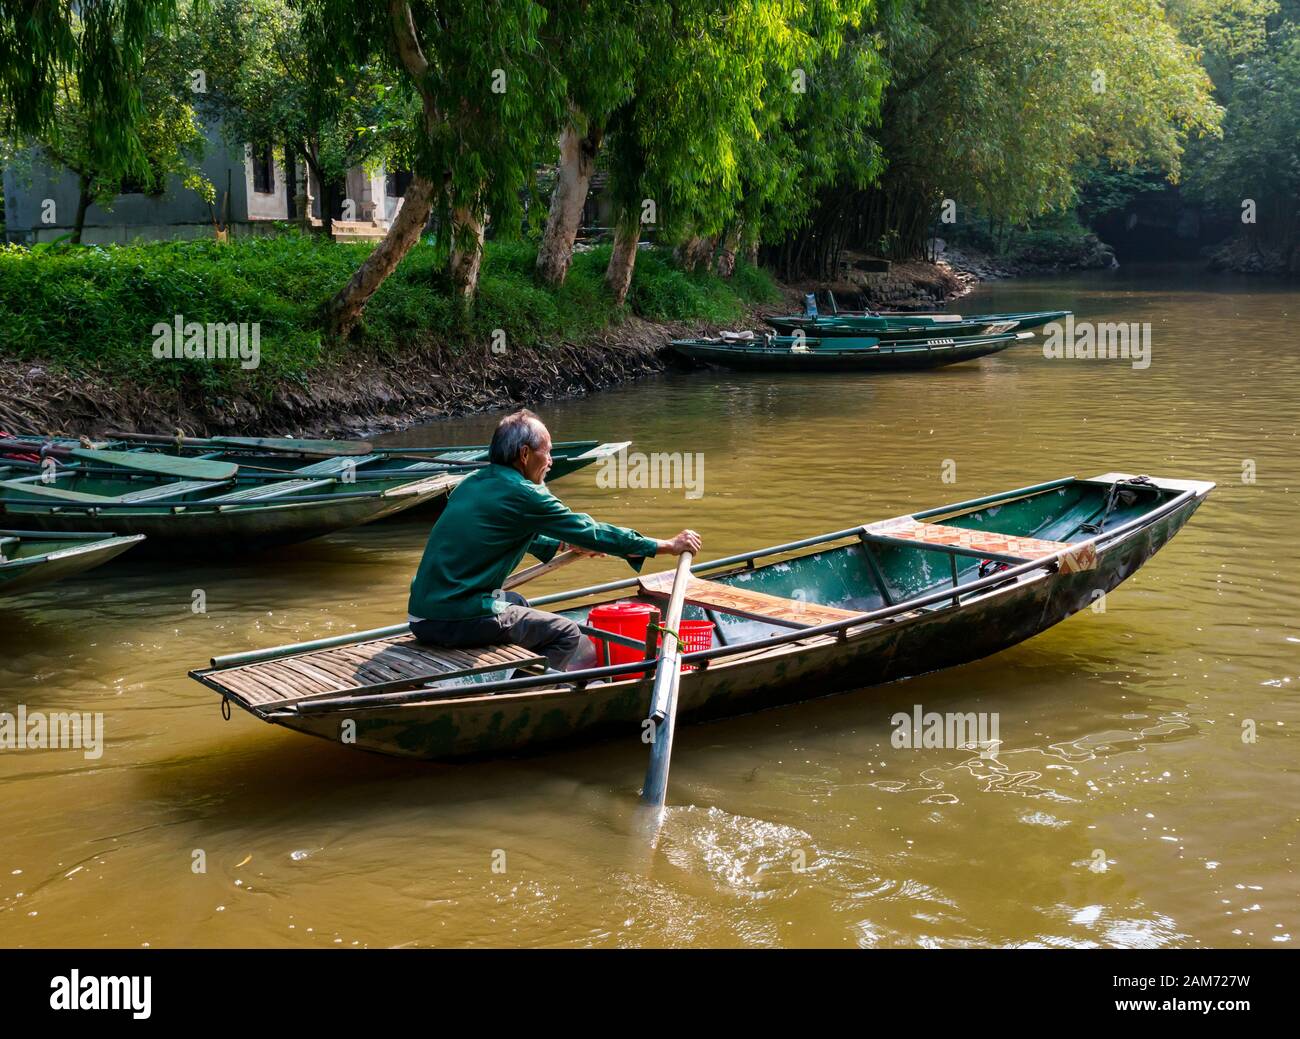 Older local Asian man with grey beard rowing sampan, Tam Coc, Ninh Binh, Vietnam, Asia Stock Photo